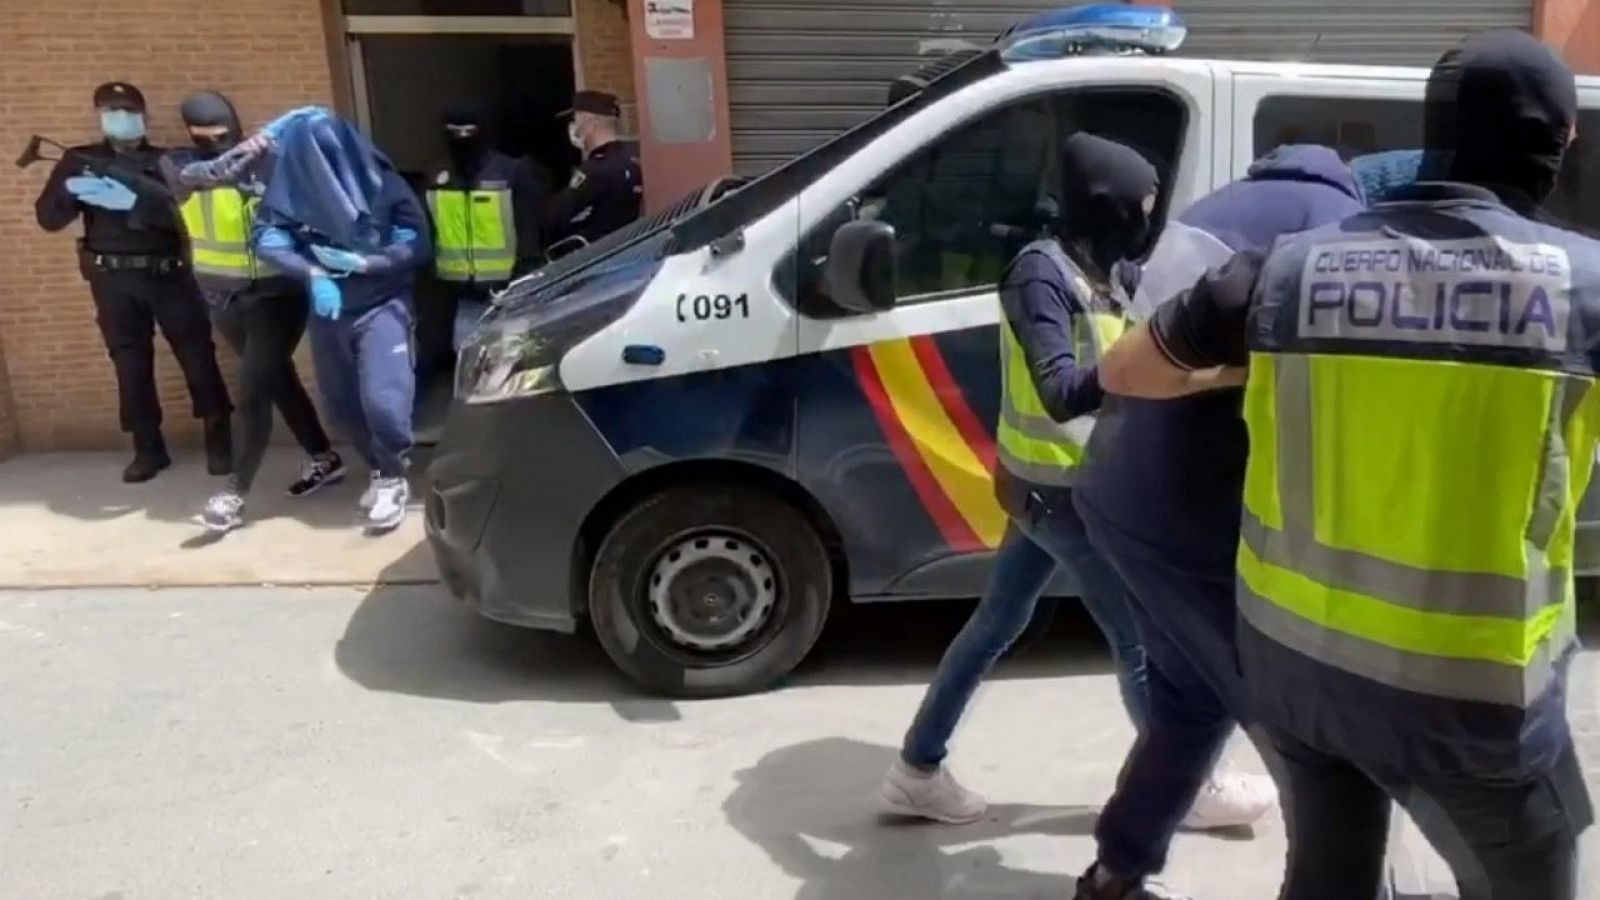 Miembros de la Policía Nacional detienen en Almería a uno de los terrroristas del Daesh más buscados de Europa.